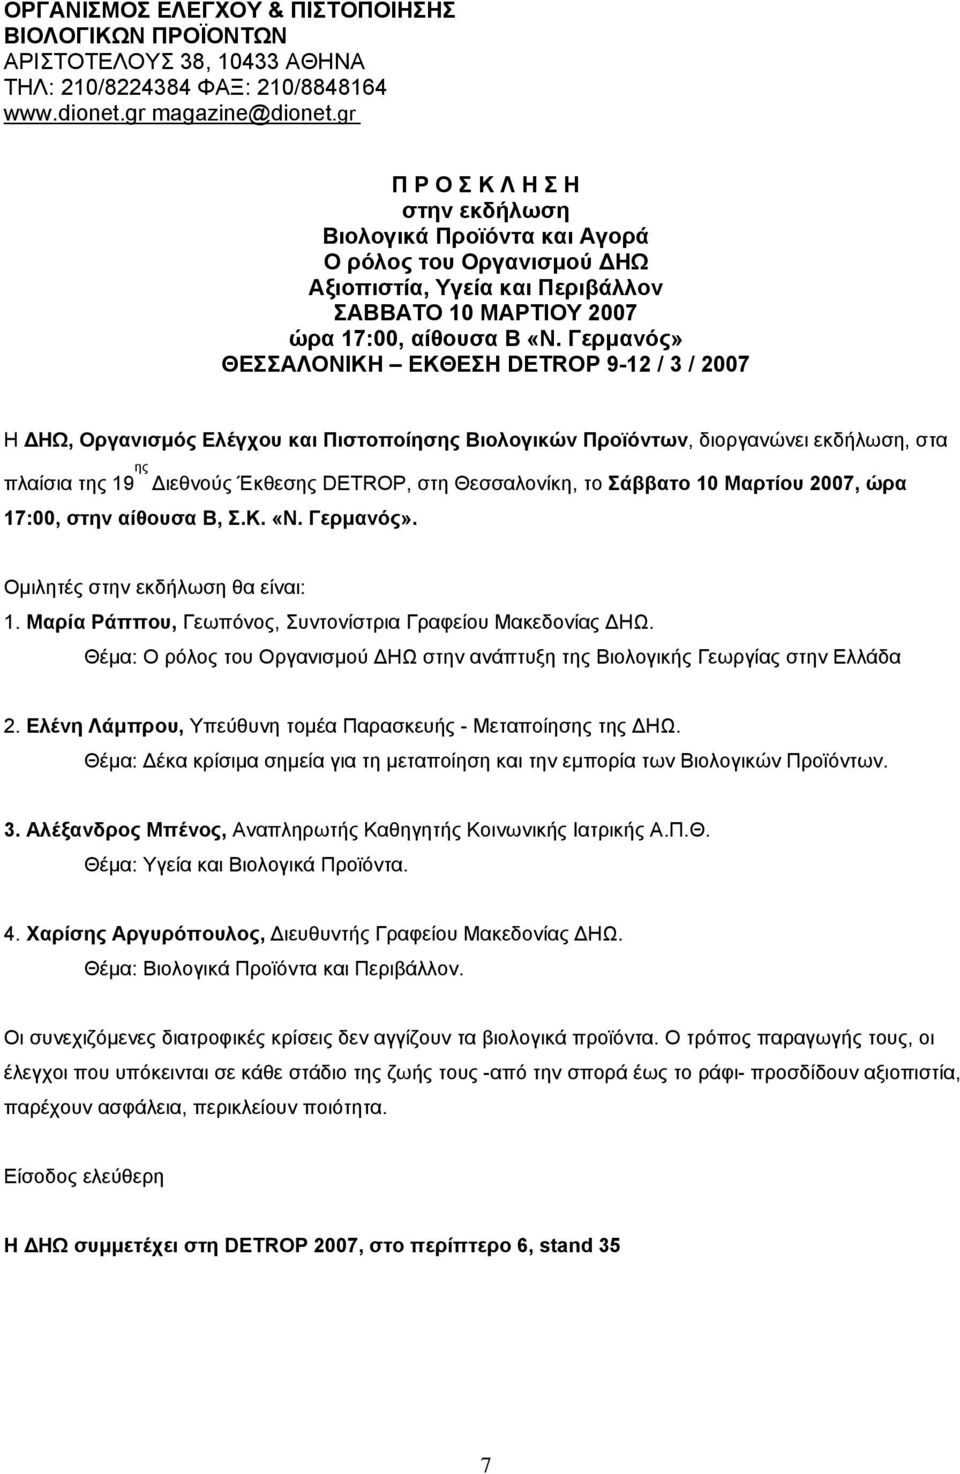 Γερµανός» ΘΕΣΣΑΛΟΝΙΚΗ ΕΚΘΕΣΗ DETROP 9-12 / 3 / 2007 Η ΗΩ, Οργανισµός Ελέγχου και Πιστοποίησης Βιολογικών Προϊόντων, διοργανώνει εκδήλωση, στα πλαίσια της 19 ης ιεθνούς Έκθεσης DETROP, στη